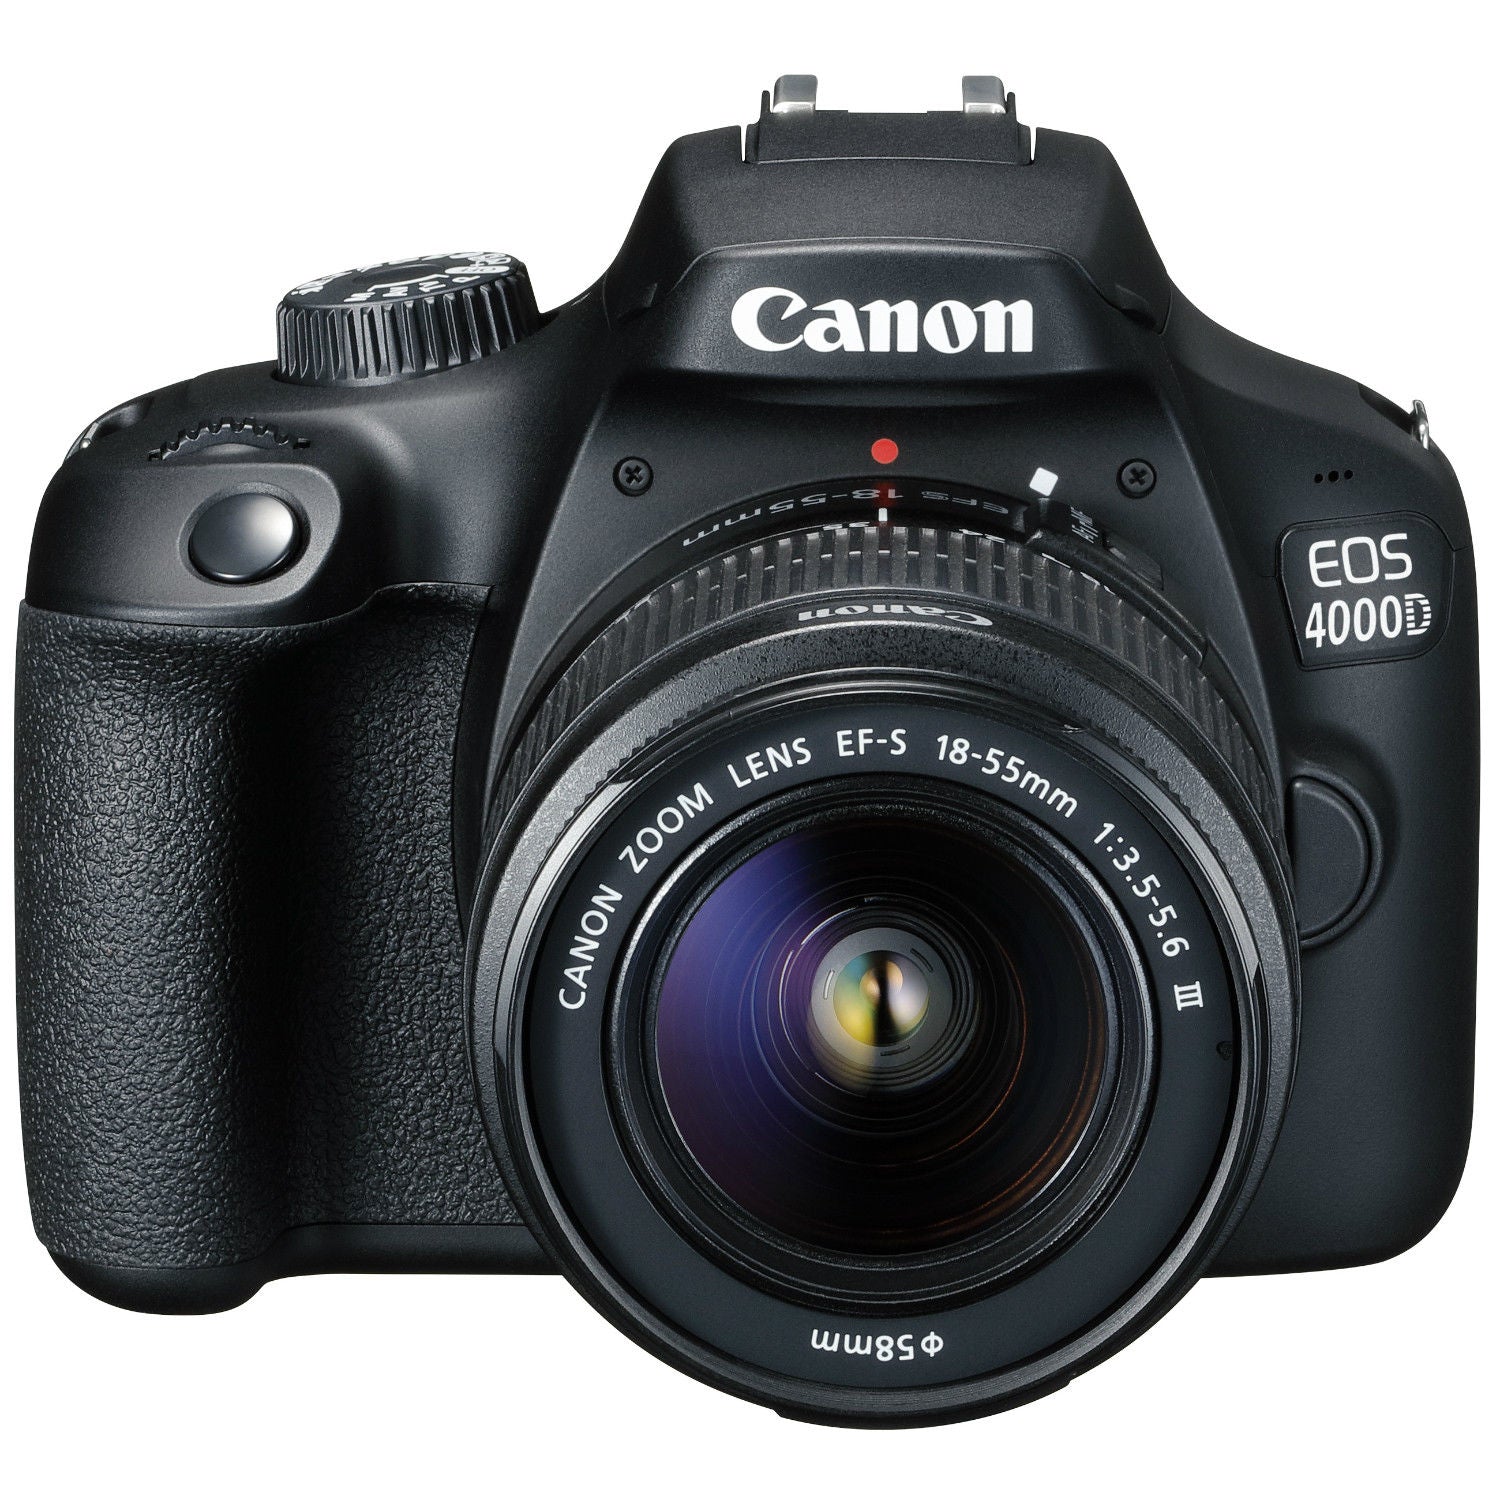 Bộ máy ảnh Canon EOS 4000D kèm ống kính 18-55 III - Máy ảnh DSLR kỹ thuật số... Máy ảnh Canon EOS 4000D kèm ống kính 18-55 III là sự kết hợp hoàn hảo giữa 2 sản phẩm để mang lại cho bạn những bức ảnh tuyệt đẹp, sắc nét và chi tiết hơn bao giờ hết. Nhiều tính năng và chế độ chụp giúp bạn tùy chỉnh và sáng tạo những tác phẩm nhiếp ảnh riêng của mình. Xem hình ảnh liên quan để khám phá chi tiết hơn về sản phẩm này.